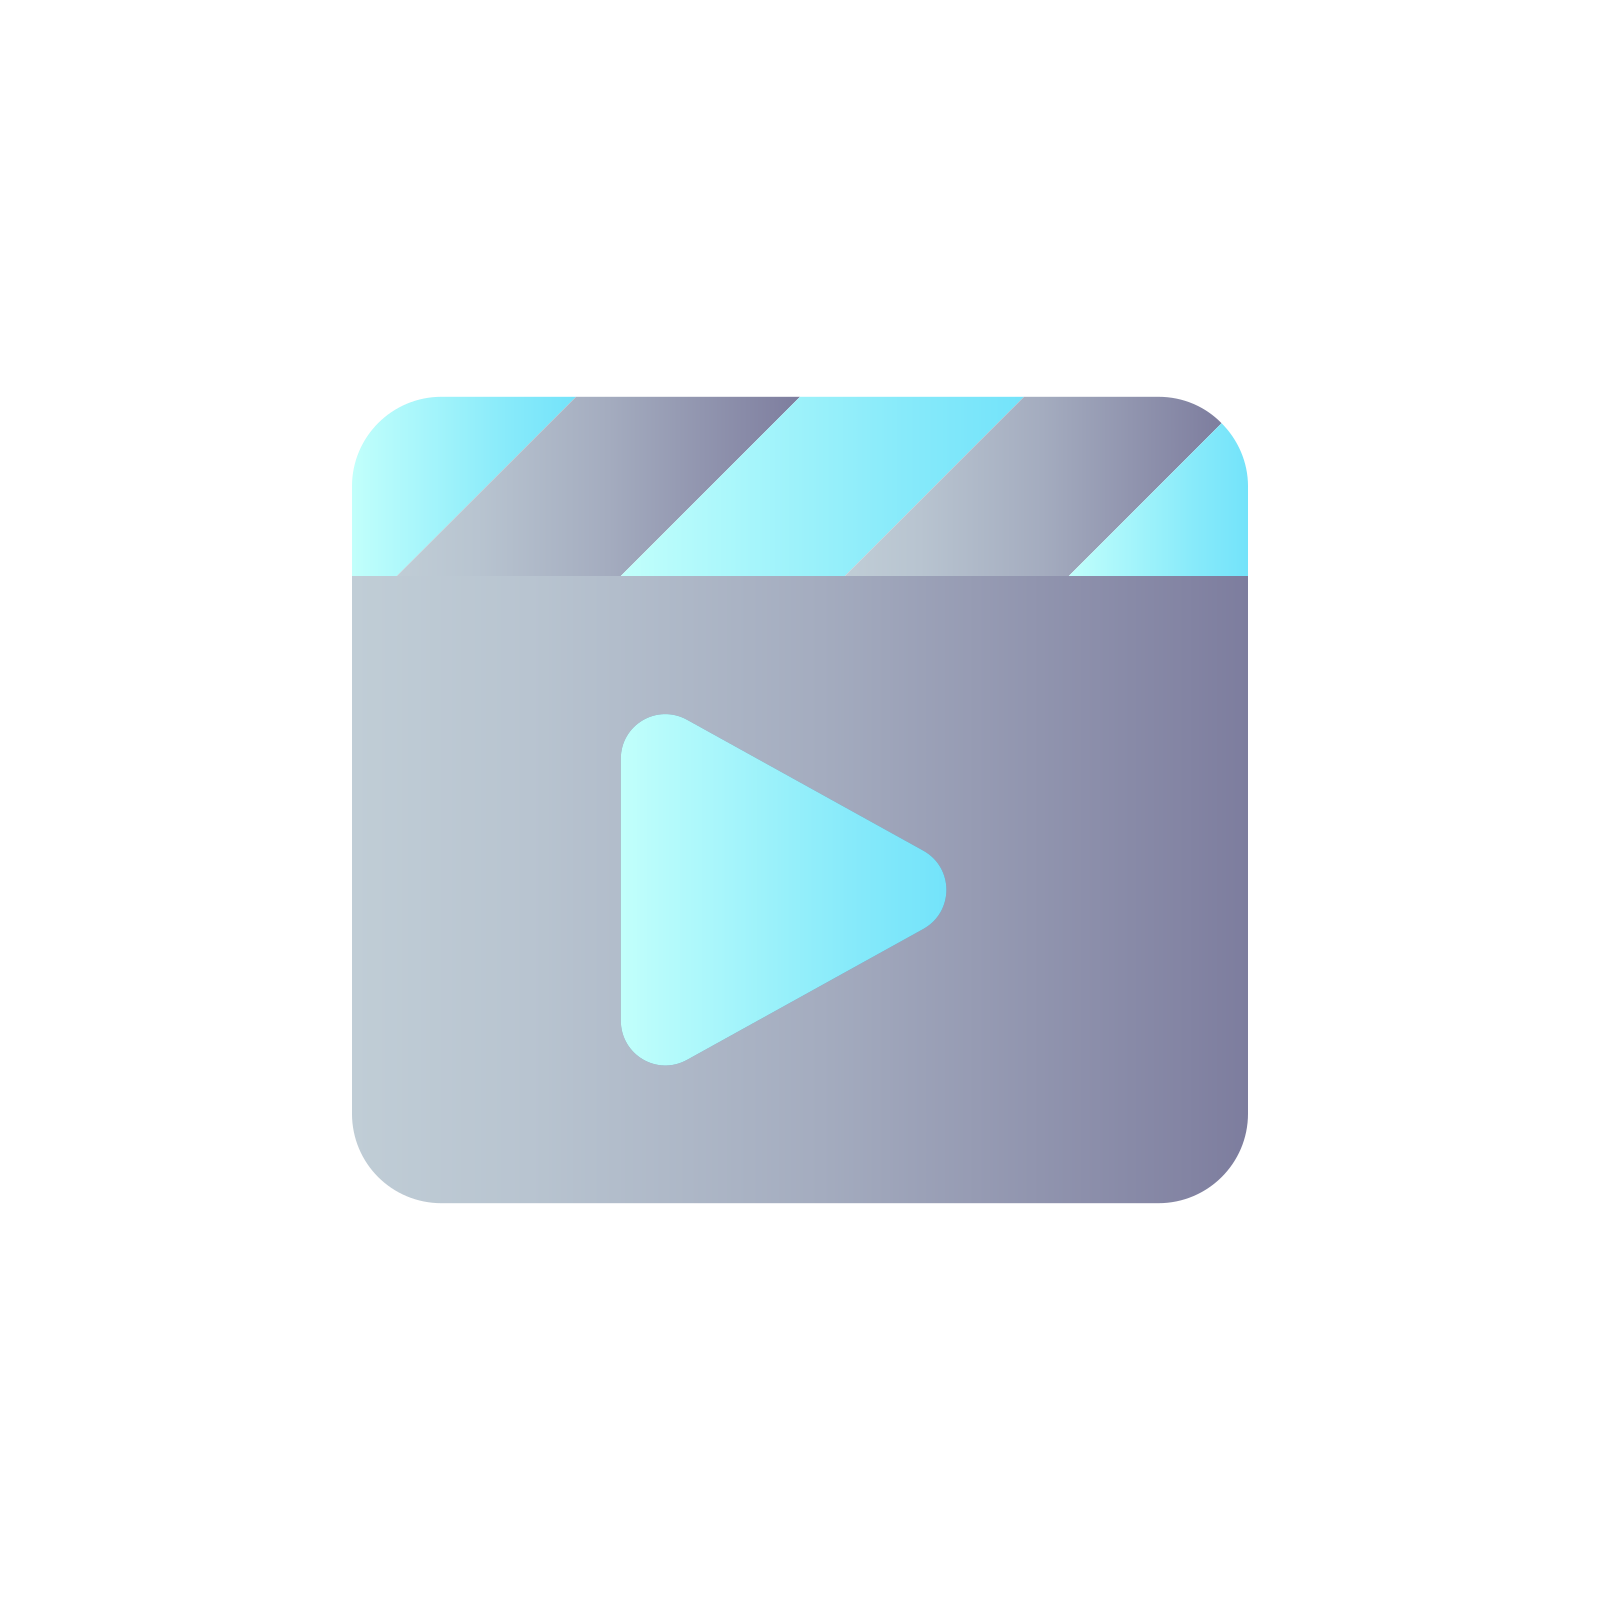 Edición de vídeo icon